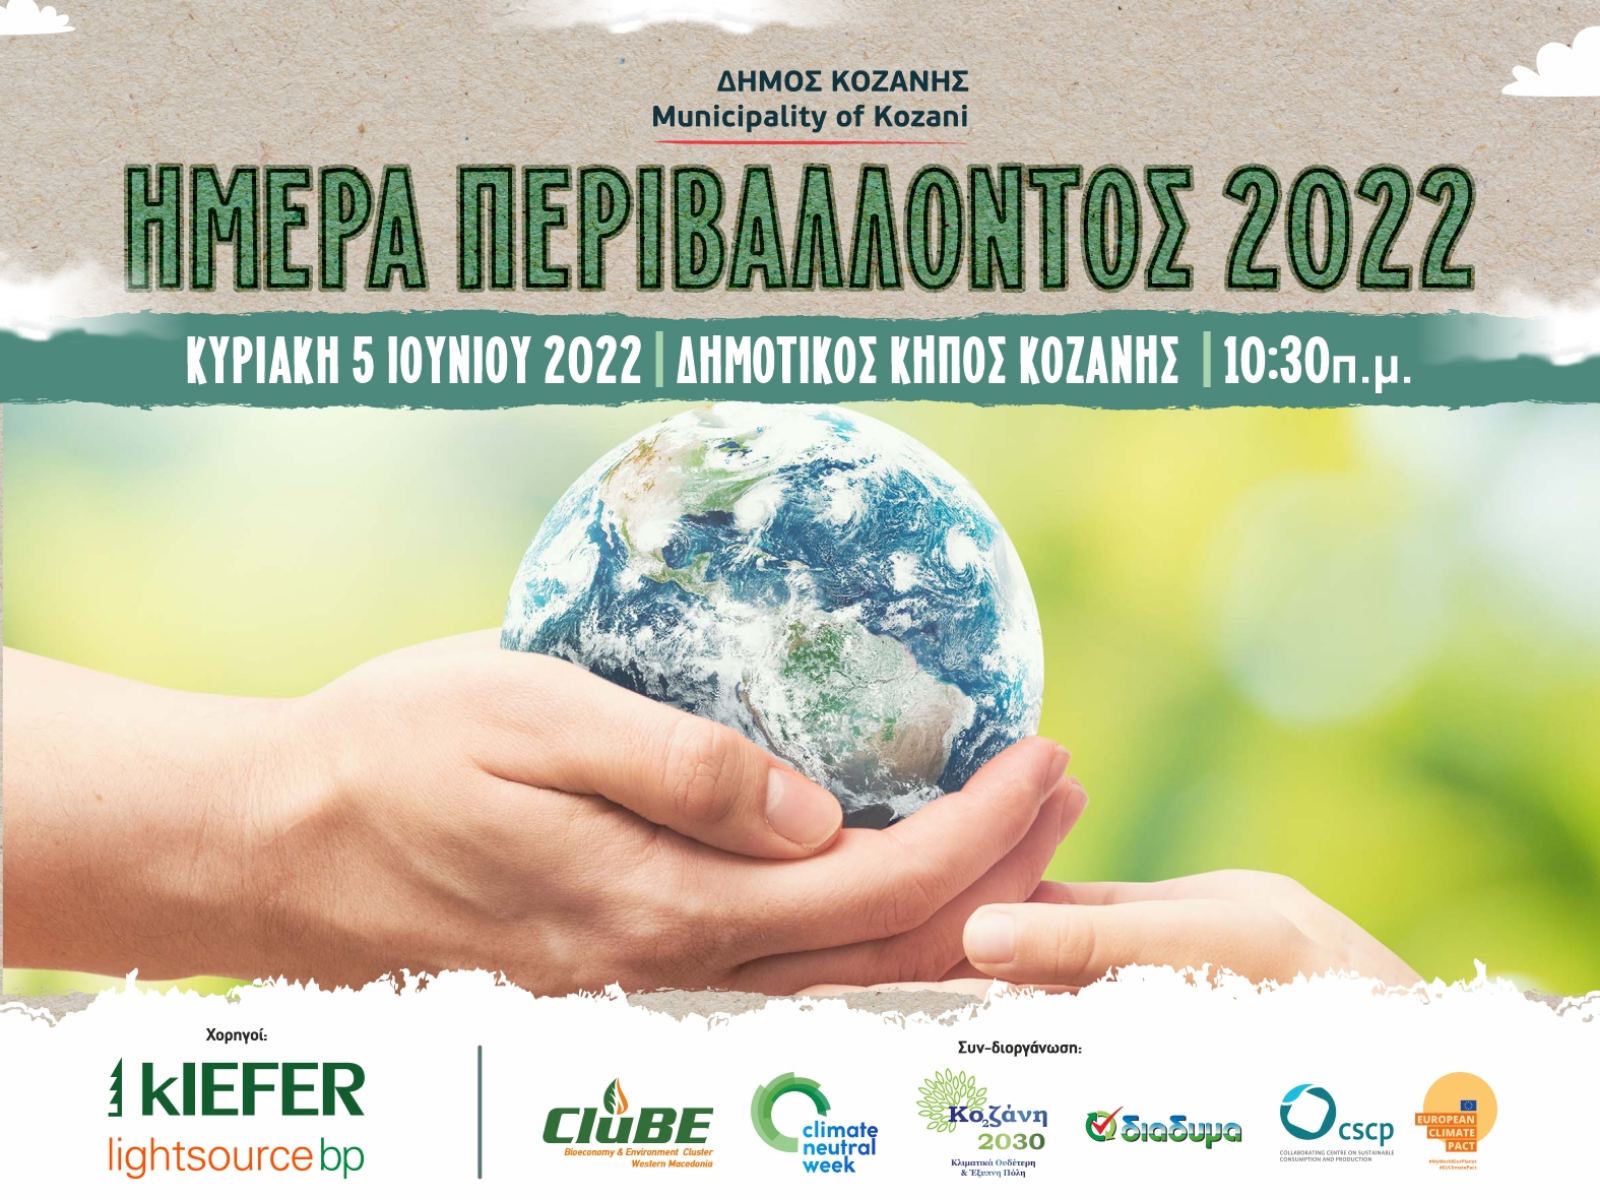 Παγκόσμια Ημέρα Περιβάλλοντος: Τετραήμερο πρόγραμμα δράσεων από το Δήμο Κοζάνης